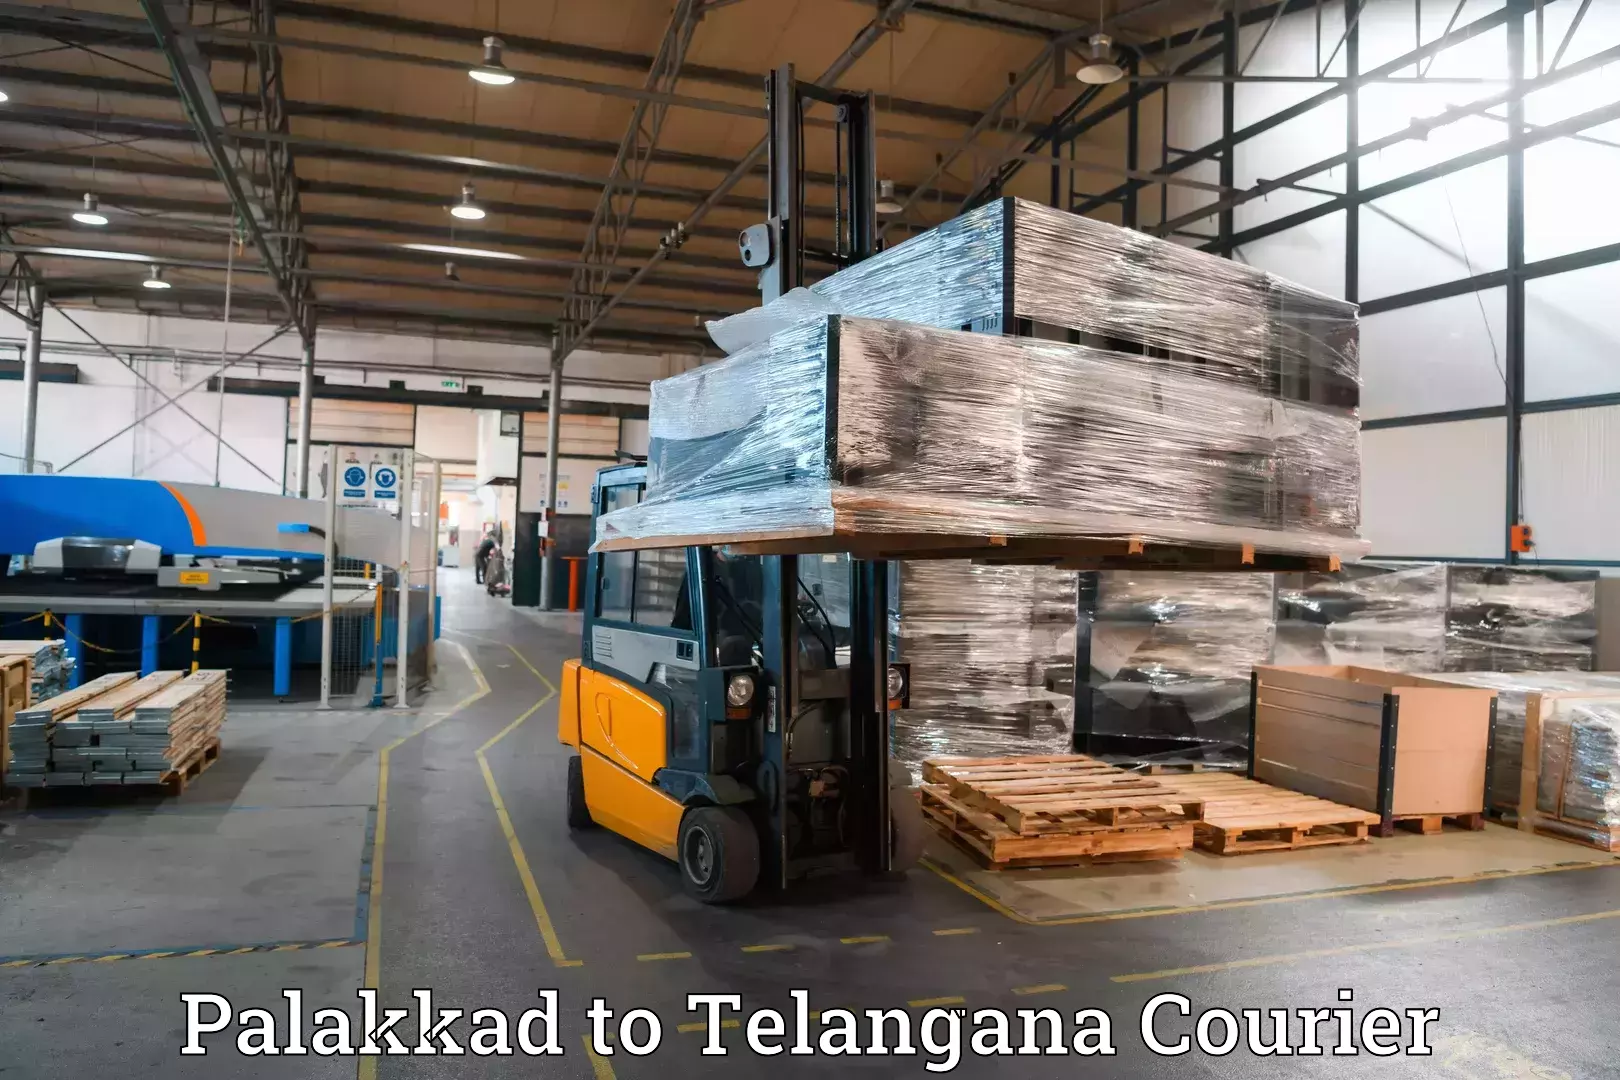 Baggage transport updates Palakkad to Rudrangi